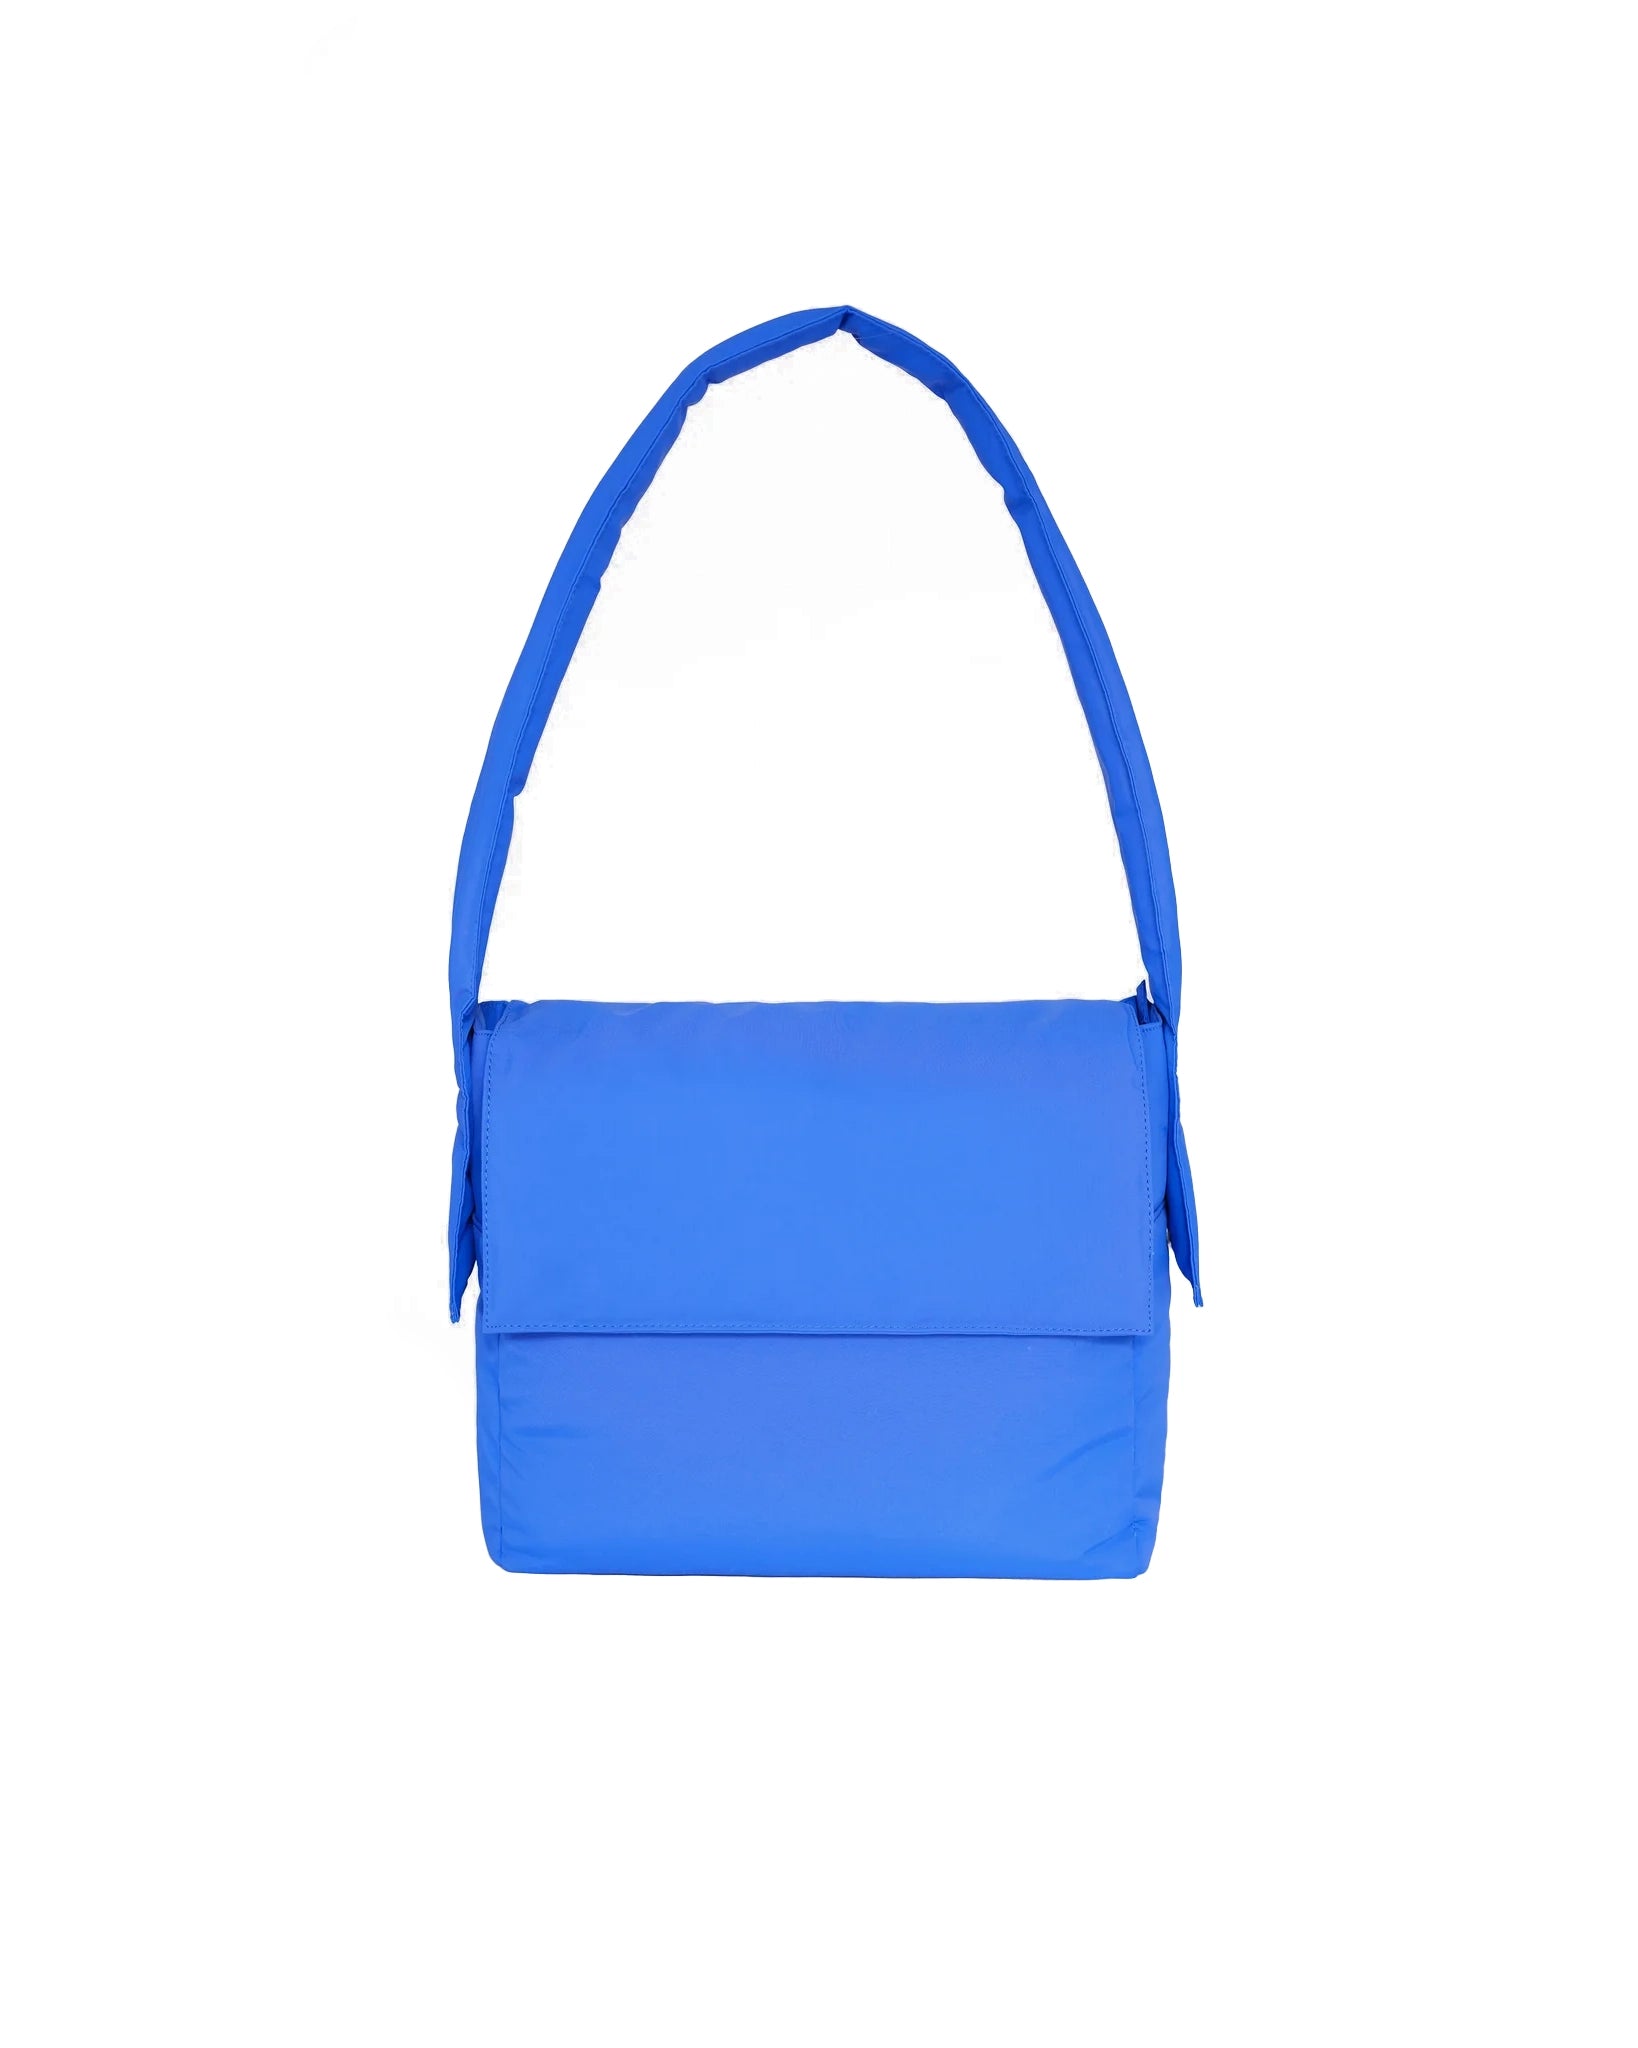 Querida soft bag - Cobalt blue